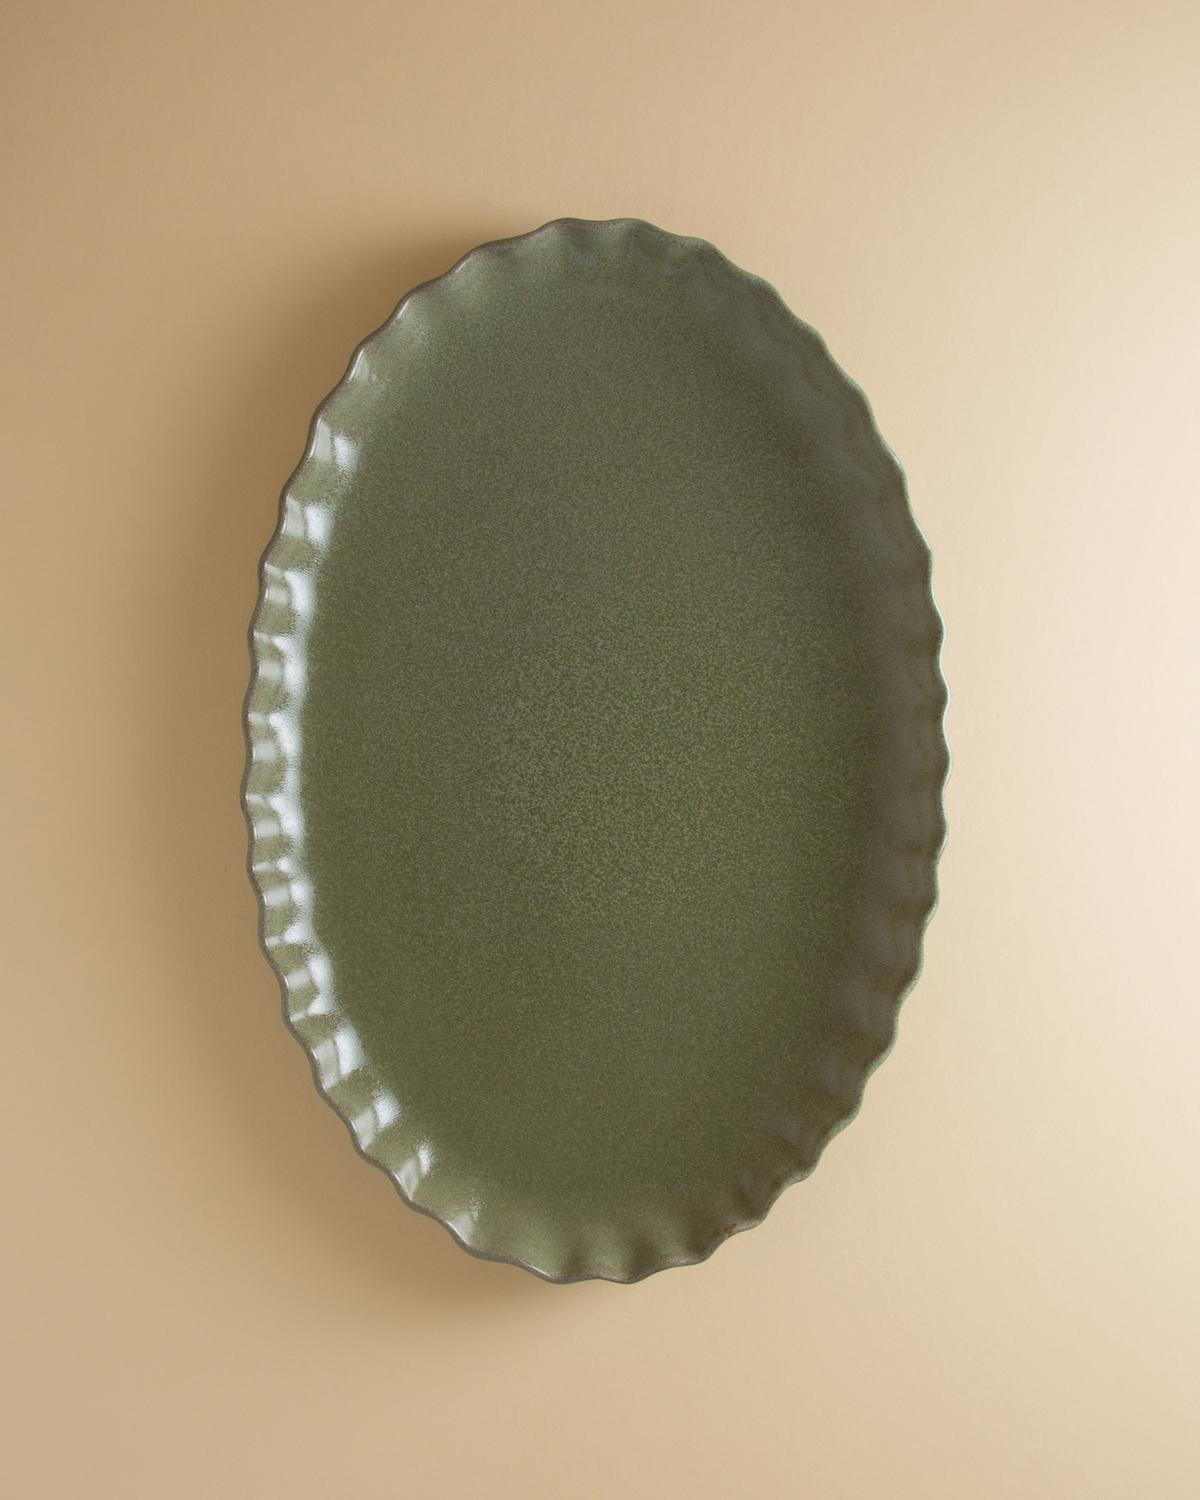 Ruffle Oval Platter -  Green